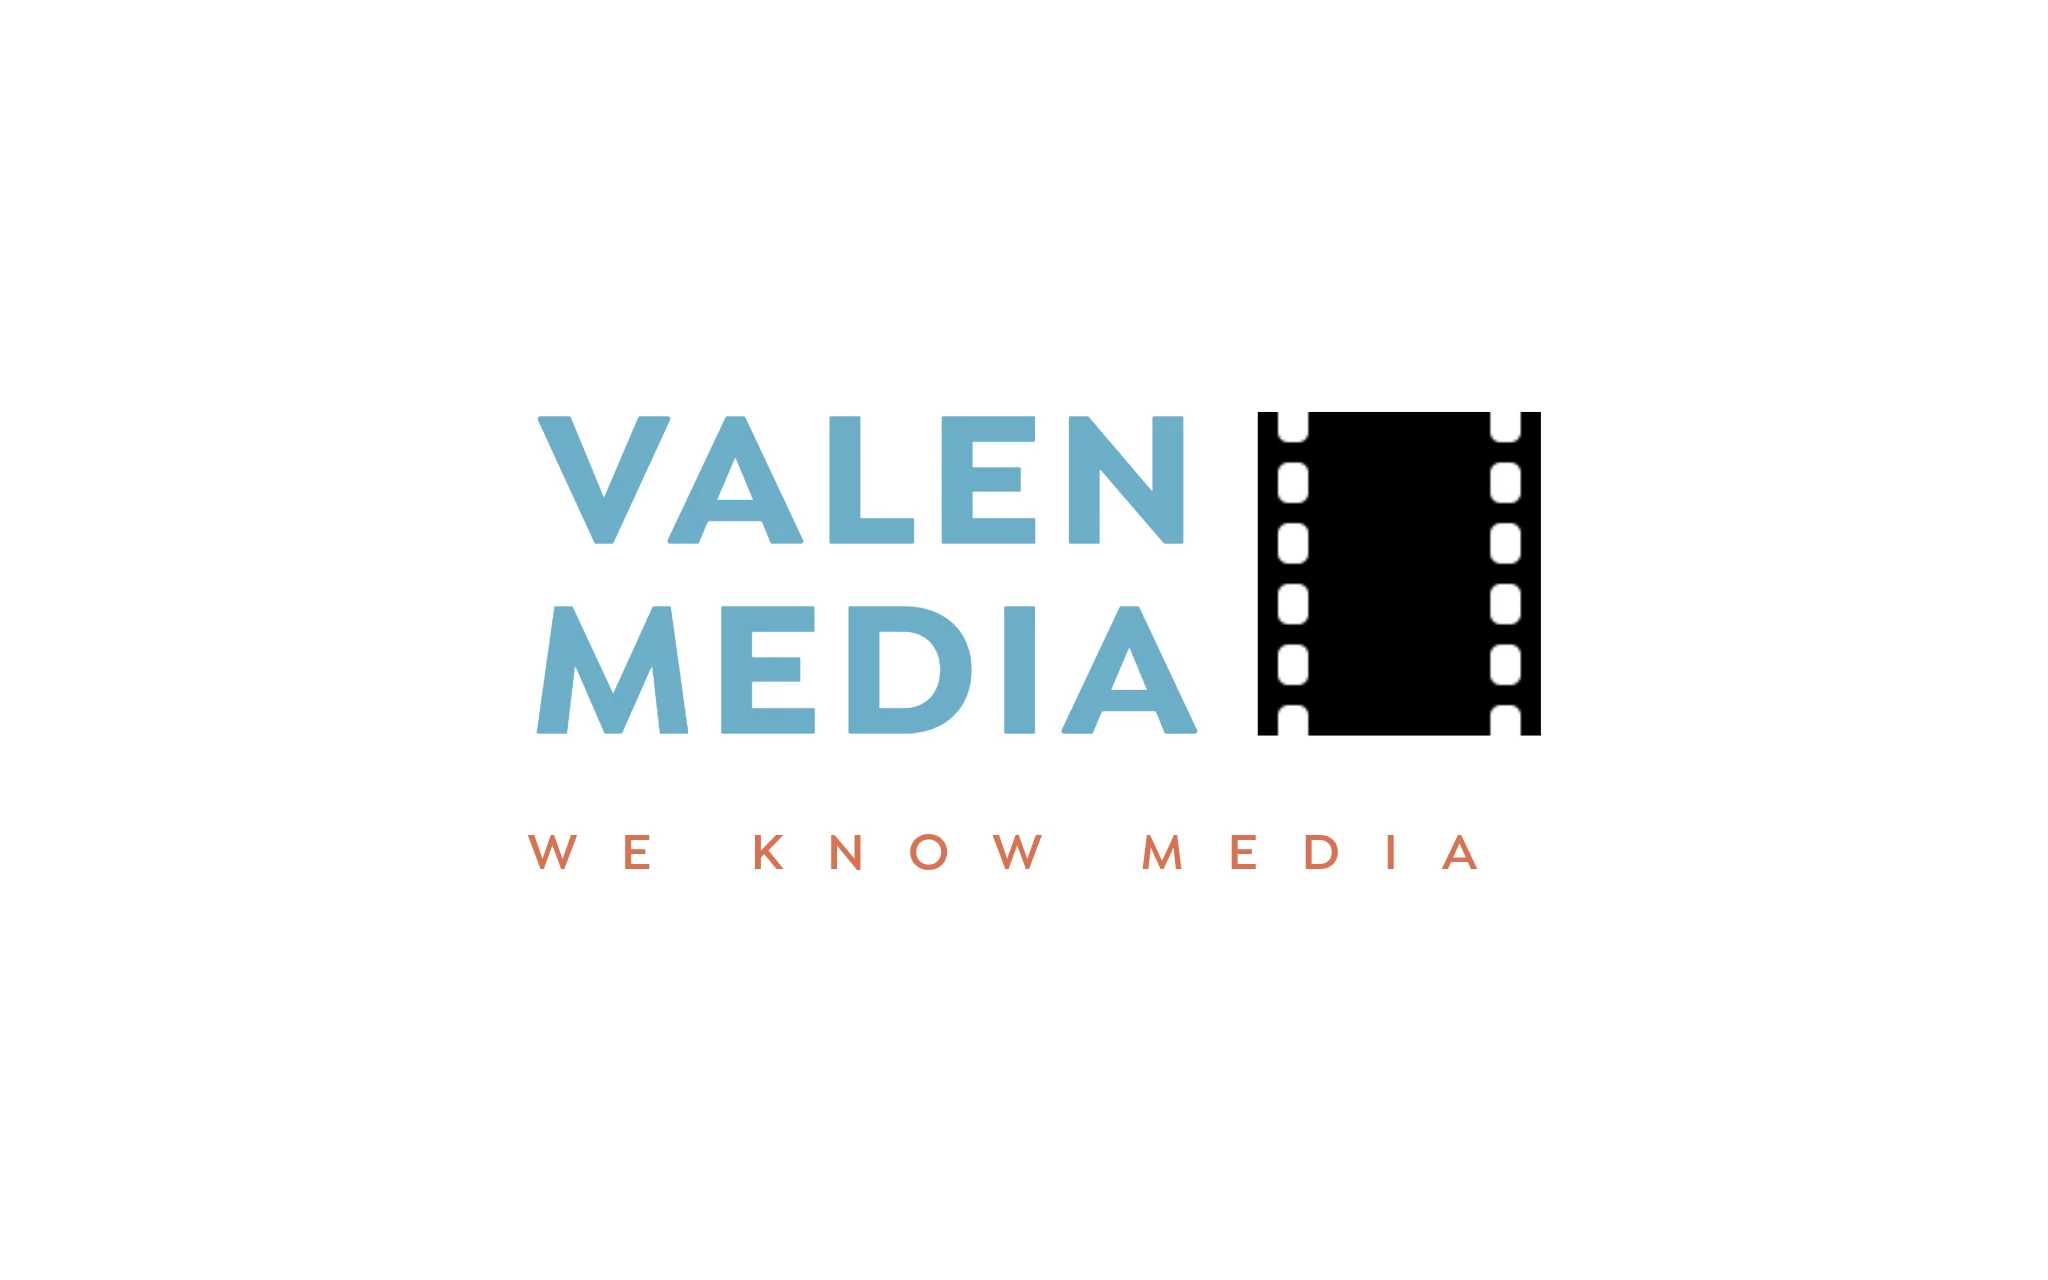 Valen Media